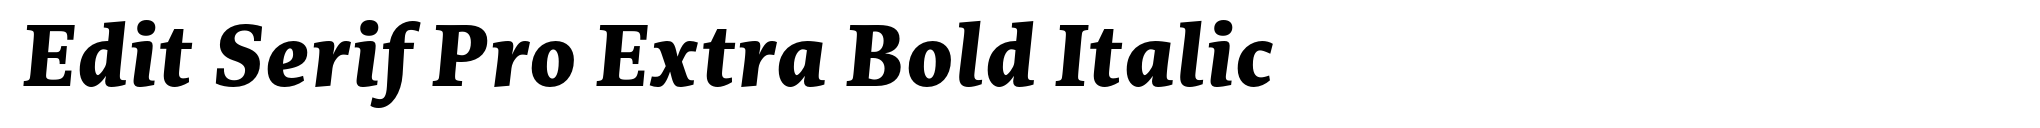 Edit Serif Pro Extra Bold Italic image